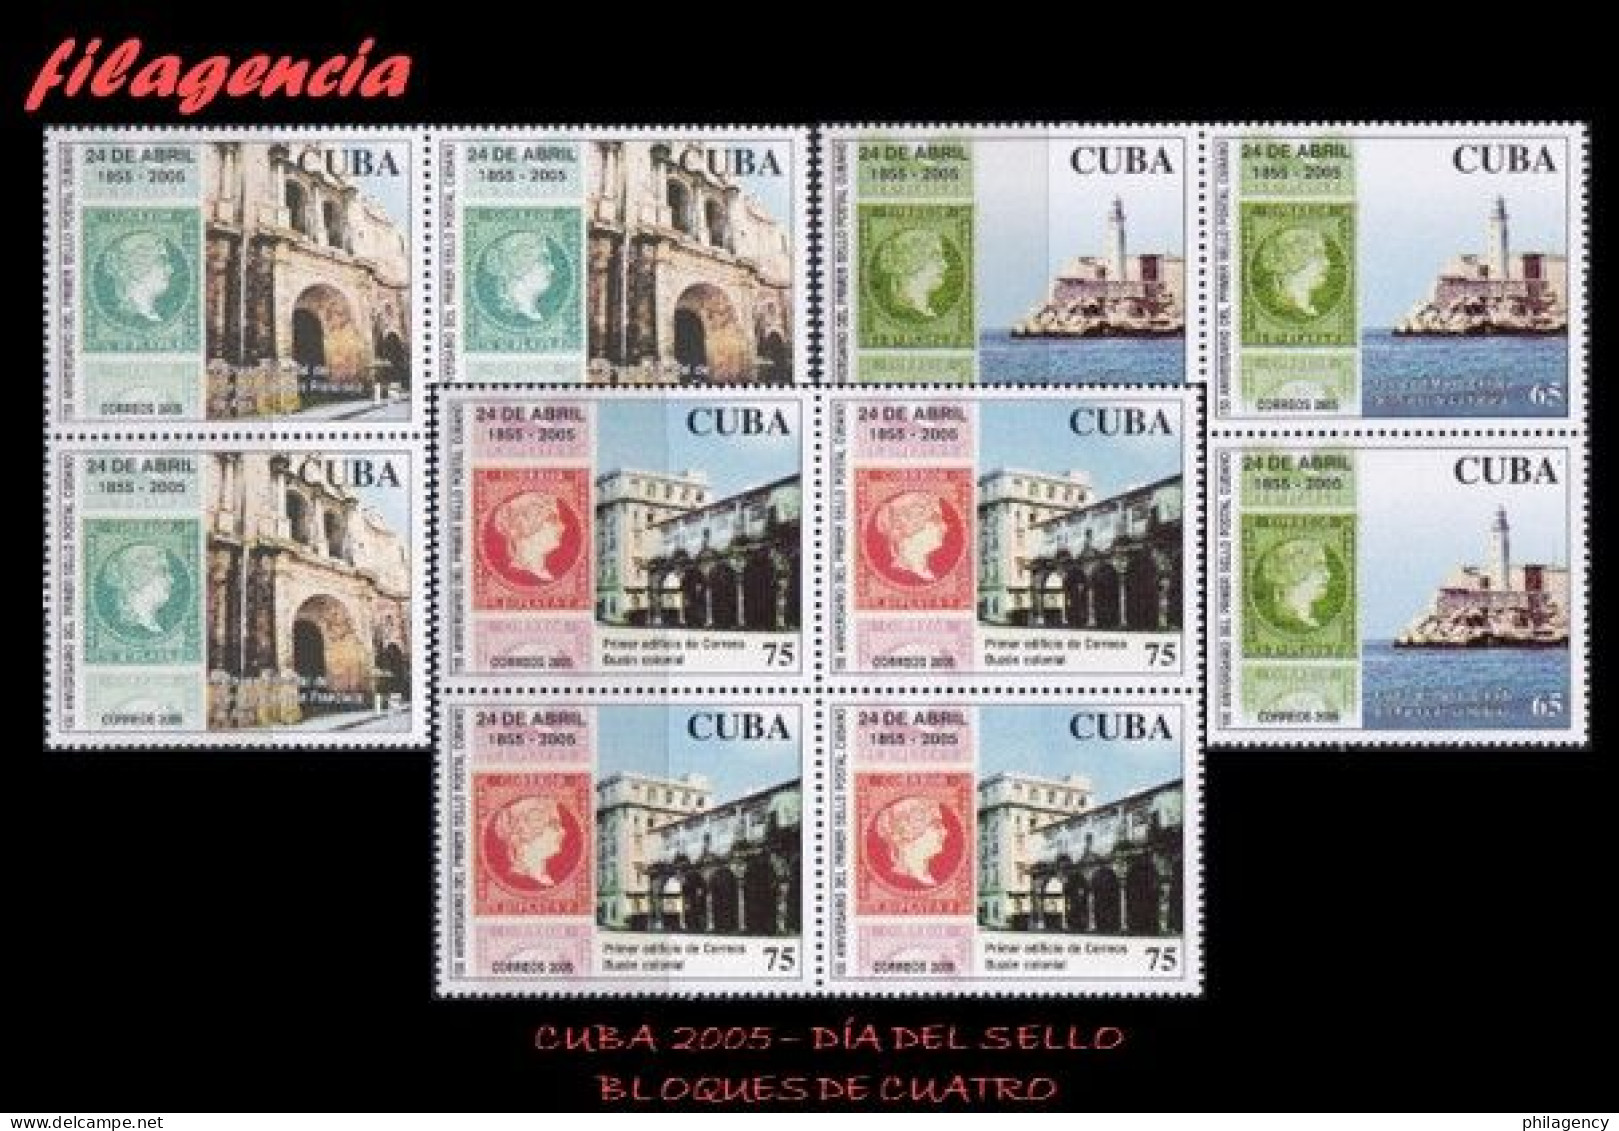 CUBA. BLOQUES DE CUATRO. 2005-14 DÍA DEL SELLO CUBANO. PRIMERA EMISIÓN DE SELLOS CIRCULADOS EN CUBA - Nuevos